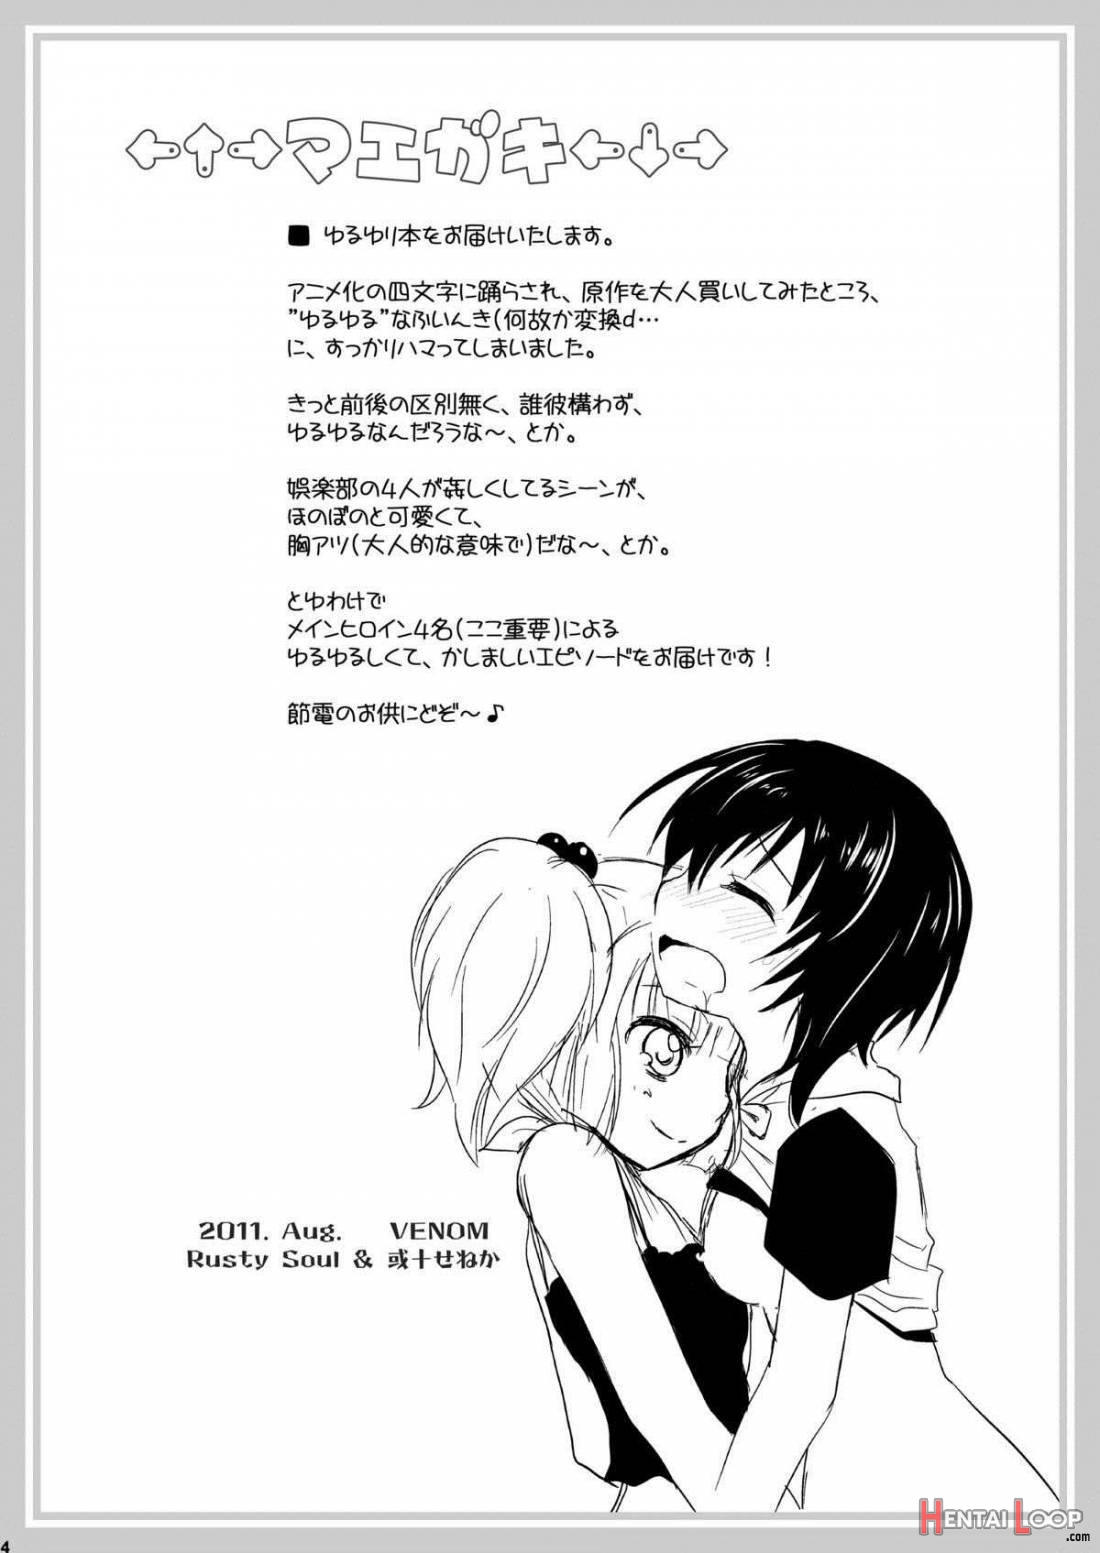 Yuruyuru page 2